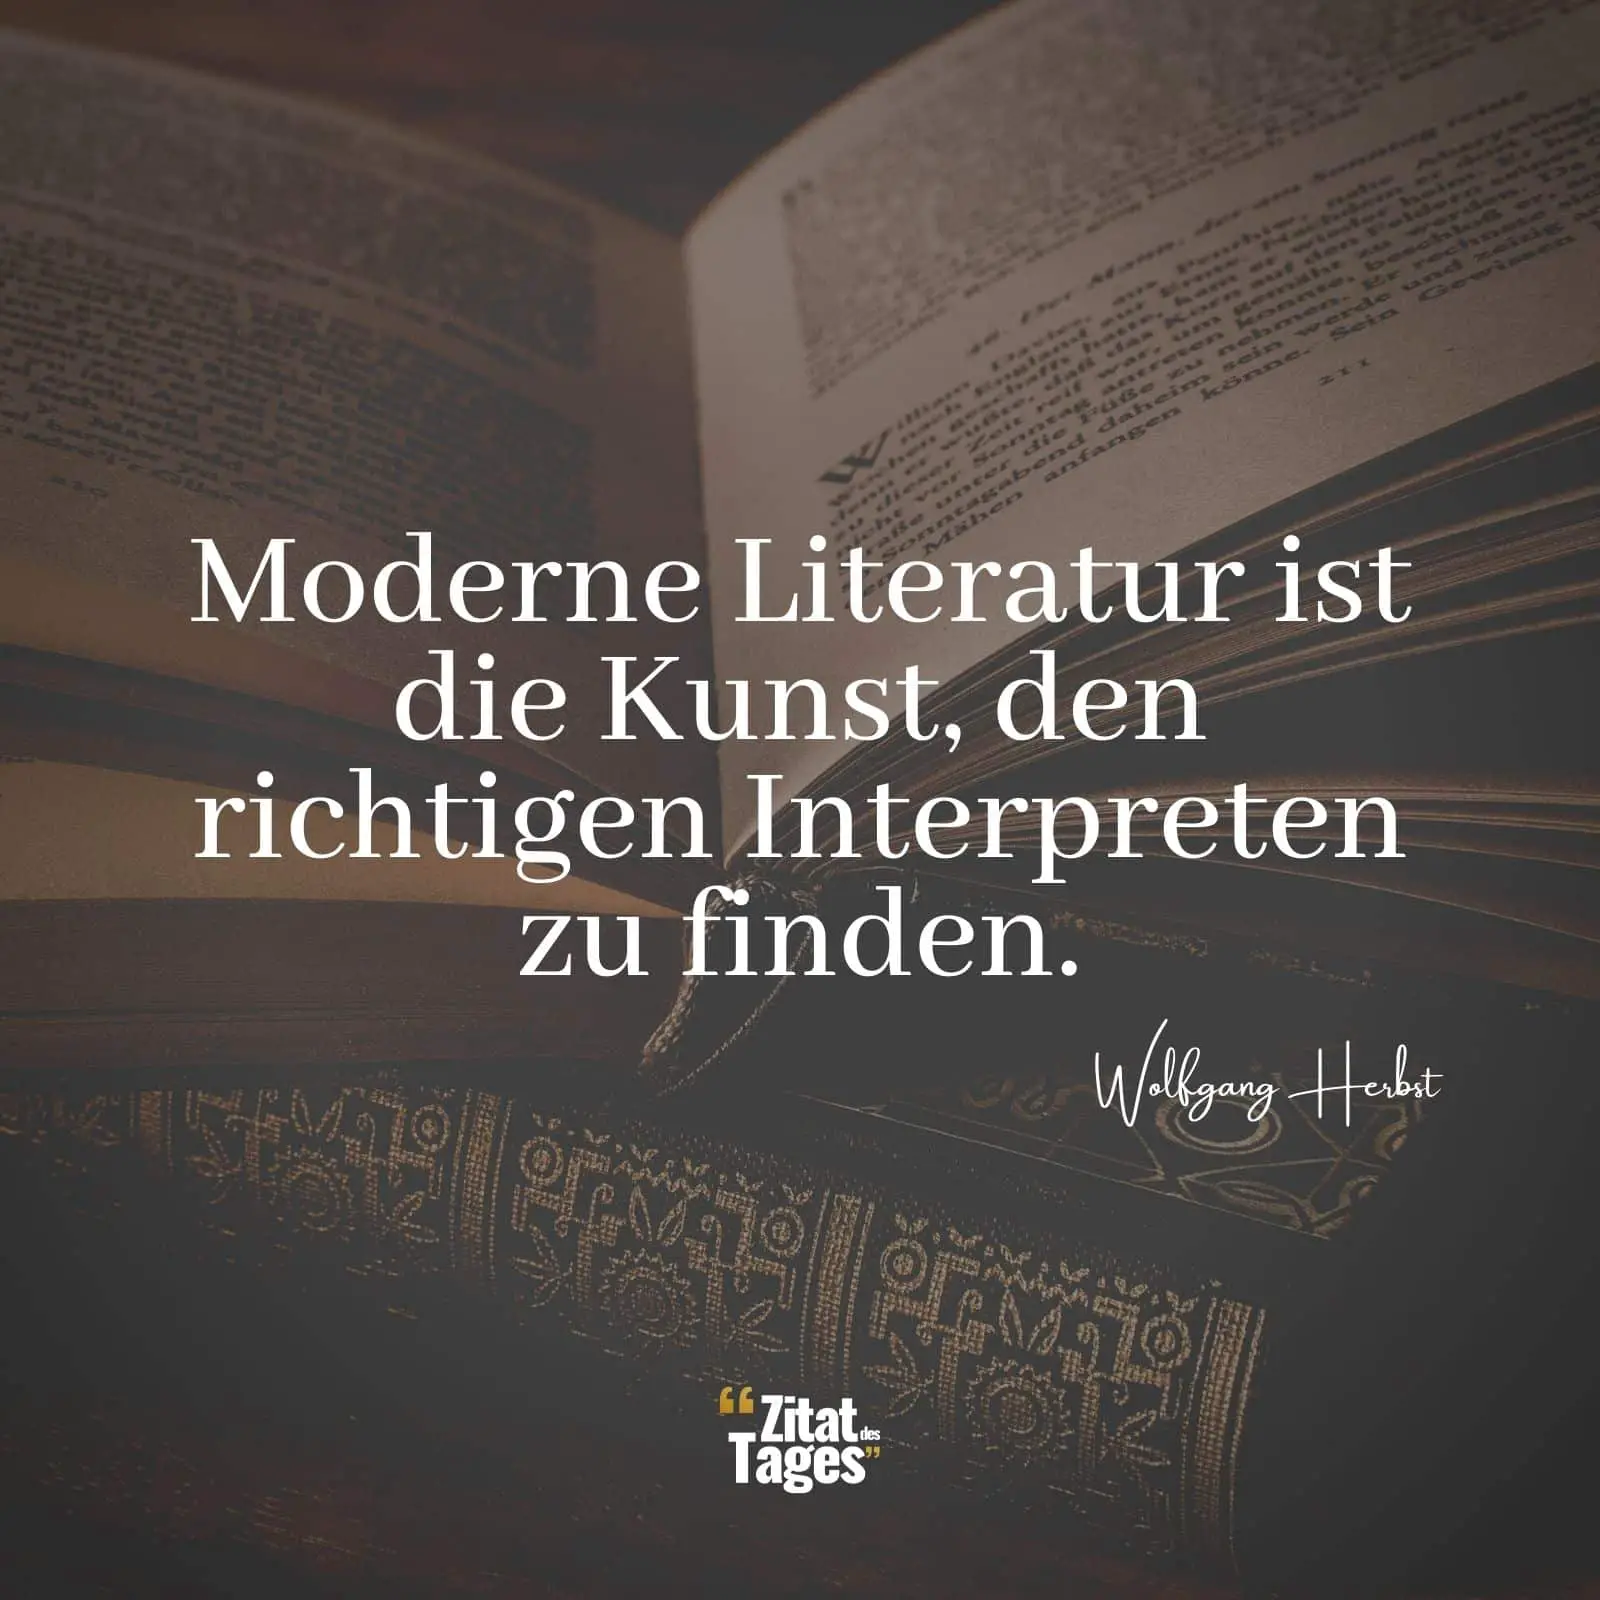 Moderne Literatur ist die Kunst, den richtigen Interpreten zu finden. - Wolfgang Herbst